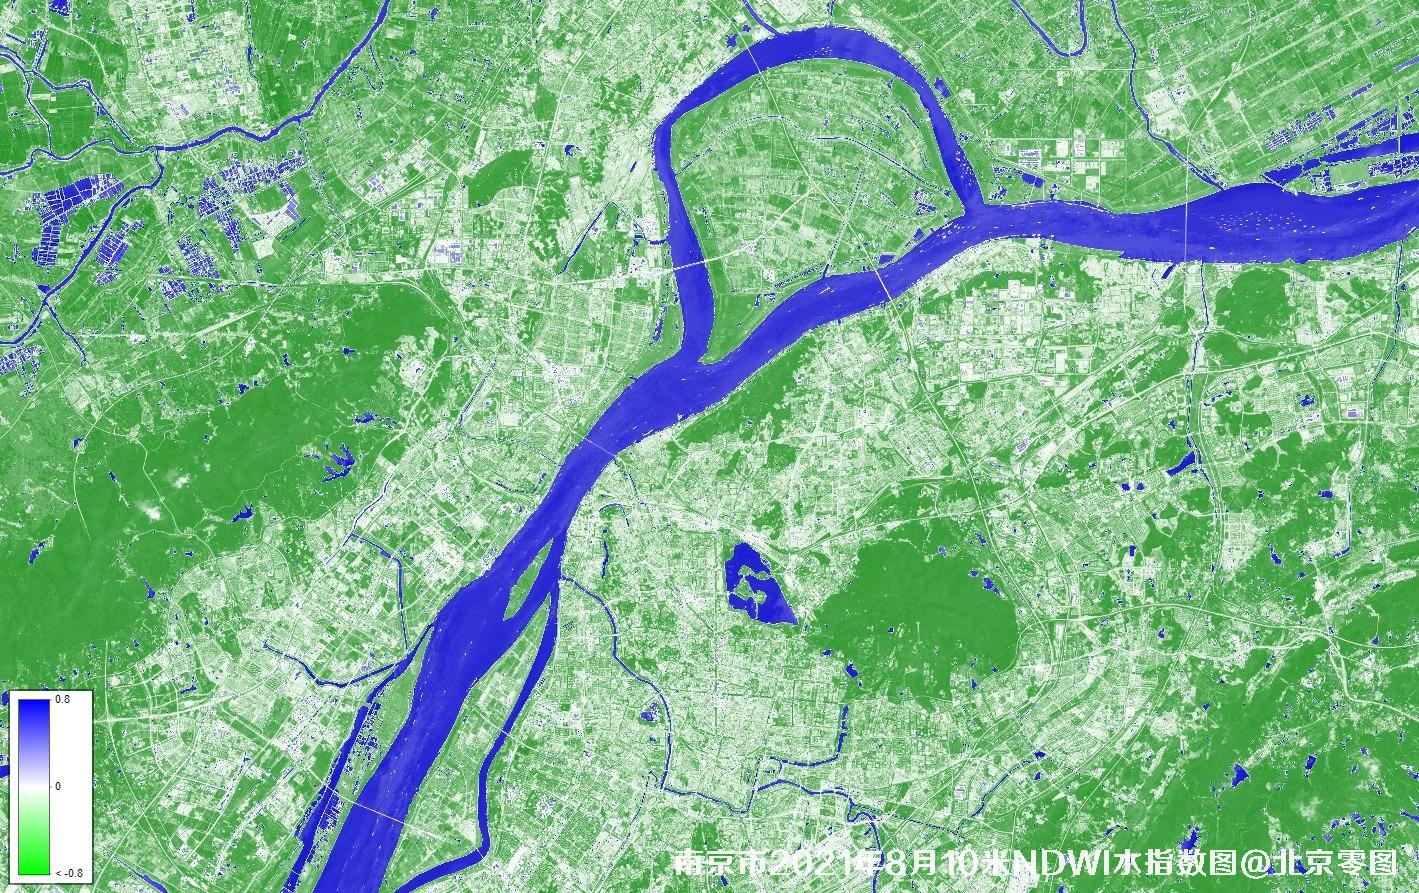 江苏省南京市2021年NDWI水被指数图